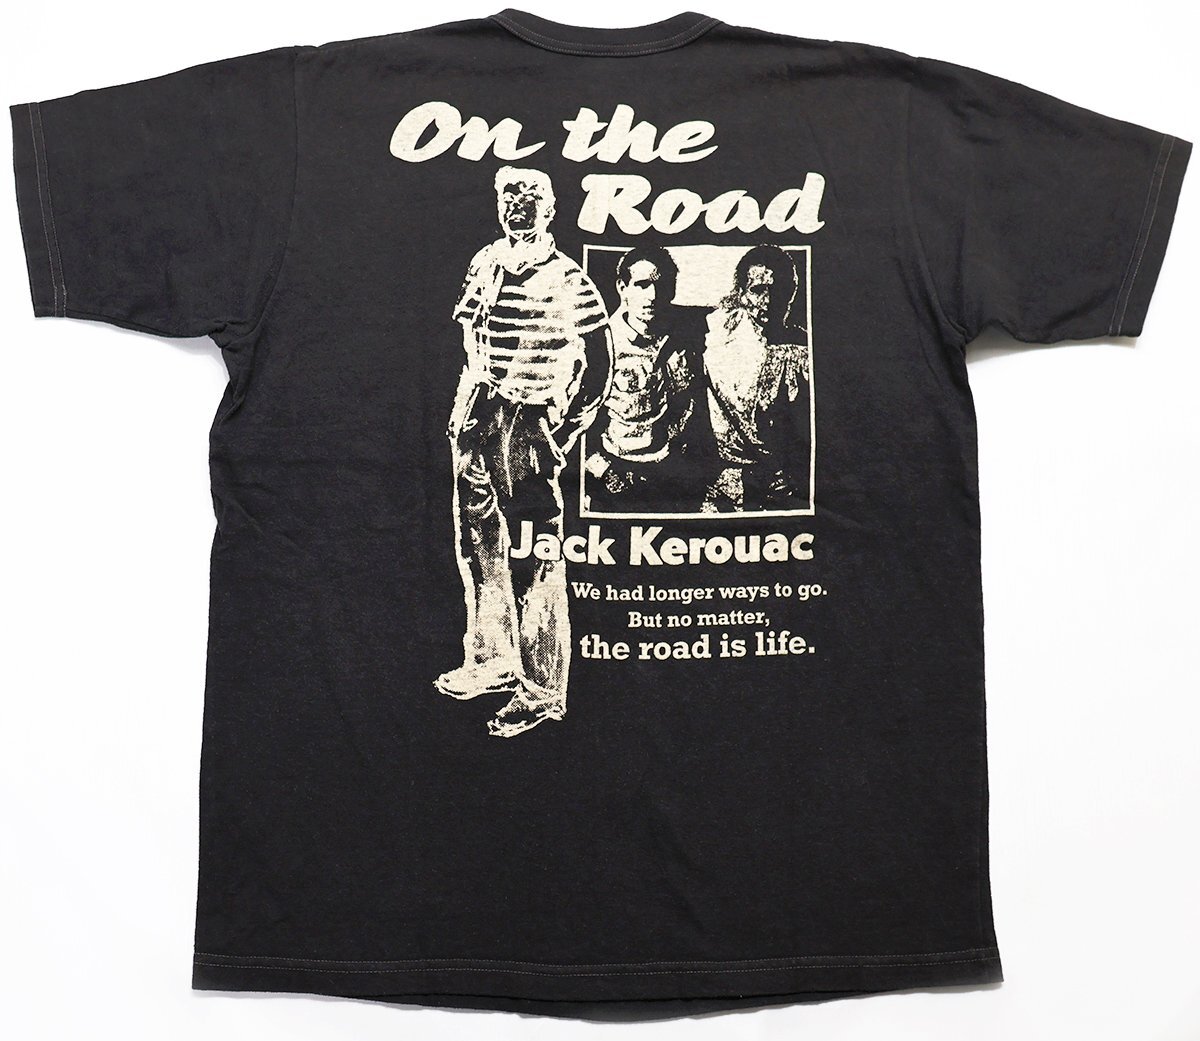 Bootleggers (ブートレガーズ) クルーネックTシャツ “On the Road by Jack Kerouac” size M / フリーホイーラーズ / ジャックケルアック_画像2